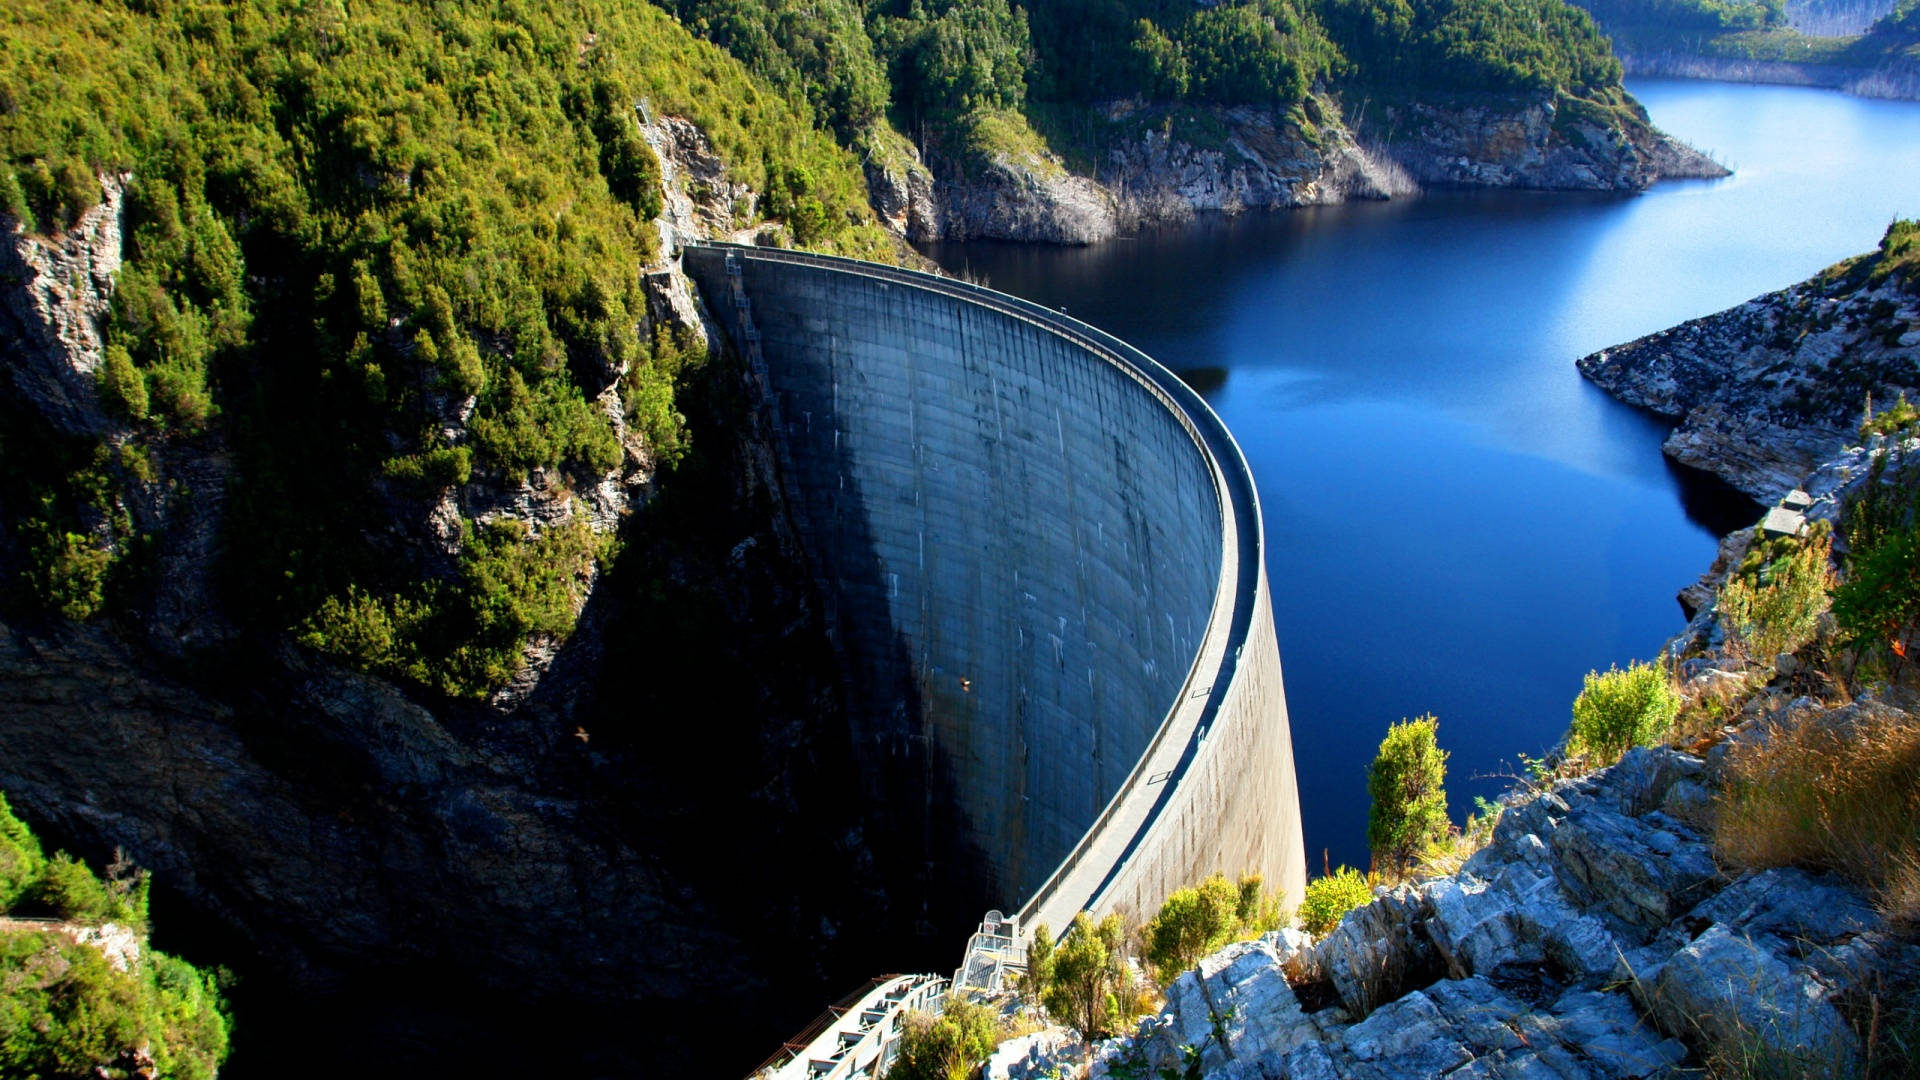 Tasmaniagordon Dam In Italian Can Be Translated As 